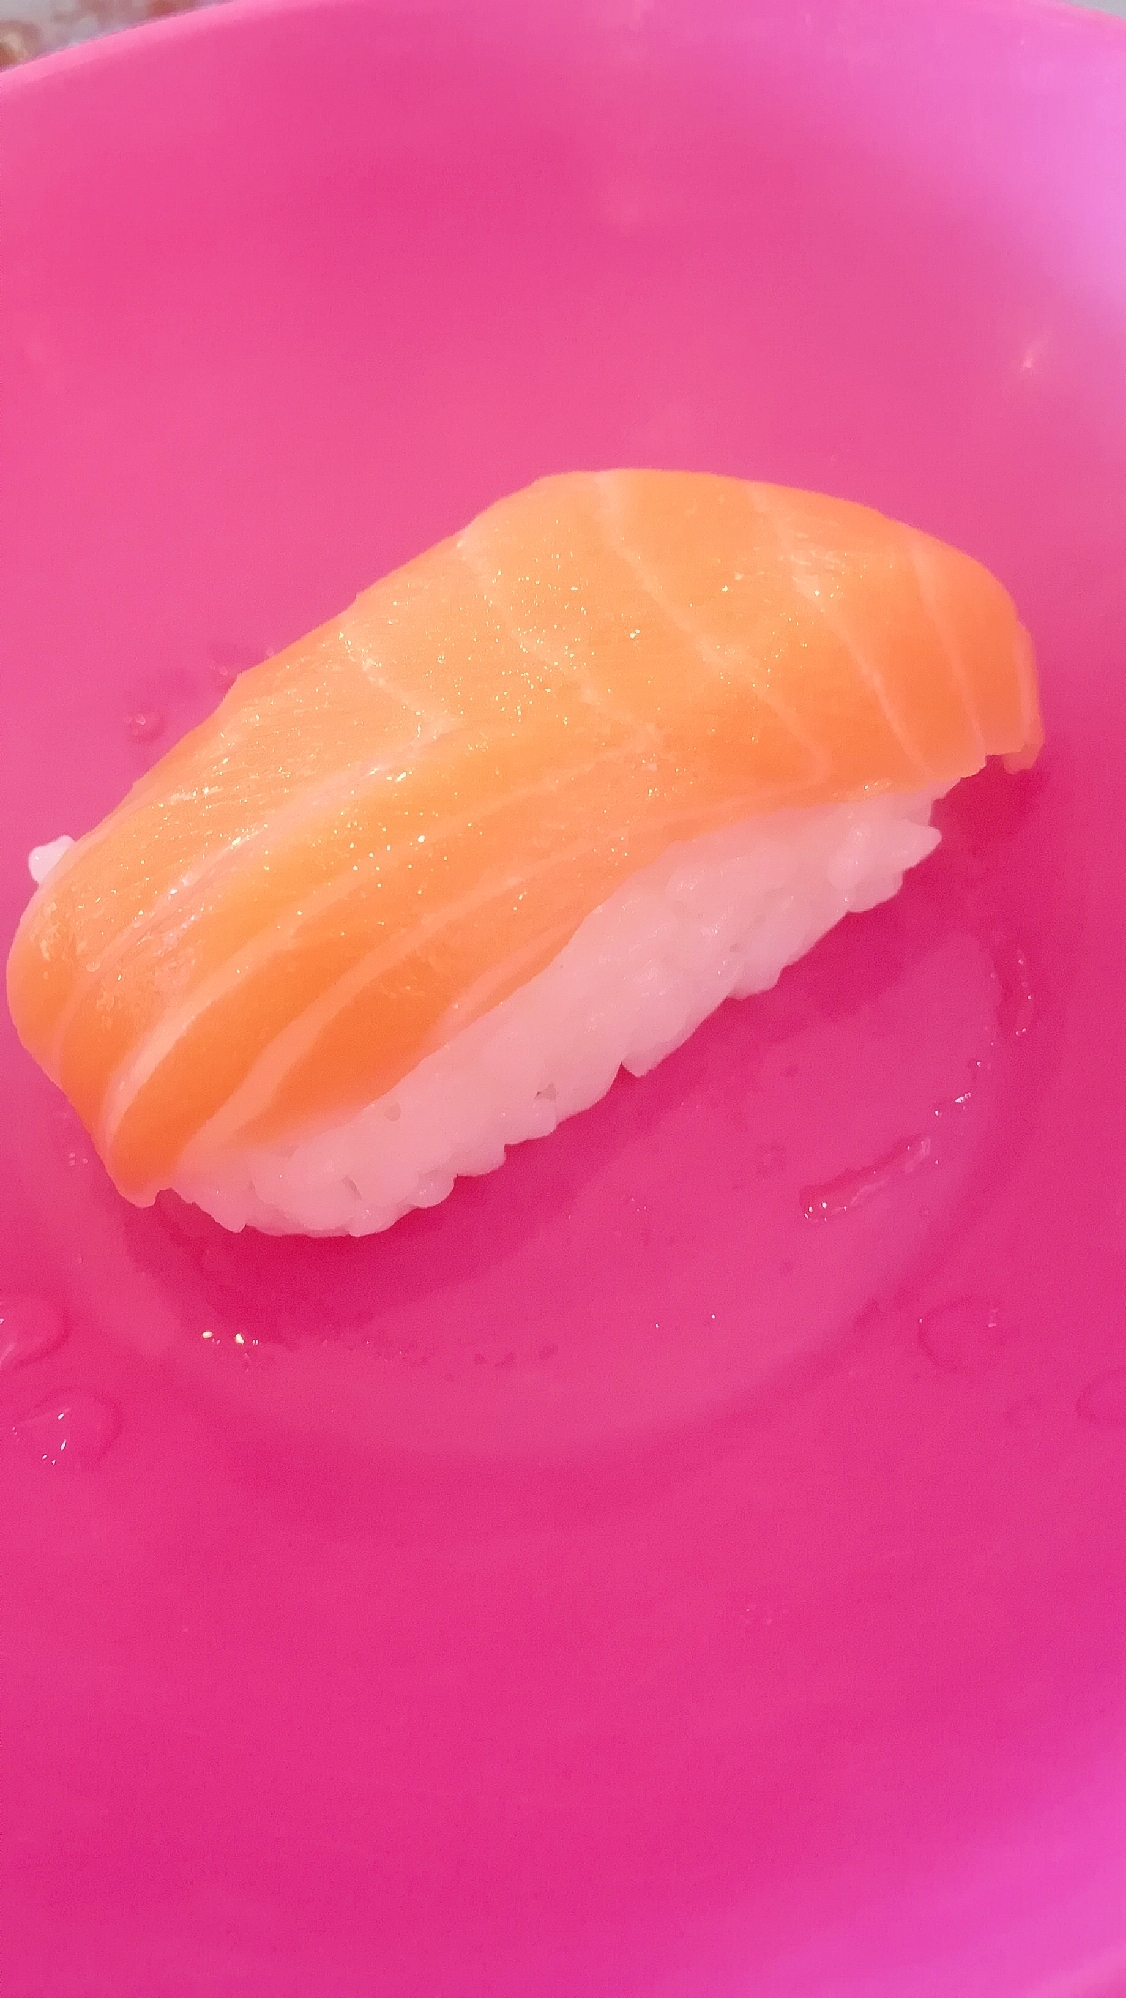 砂糖不使用☆りんご酢で酢飯☆サーモンの握り寿司